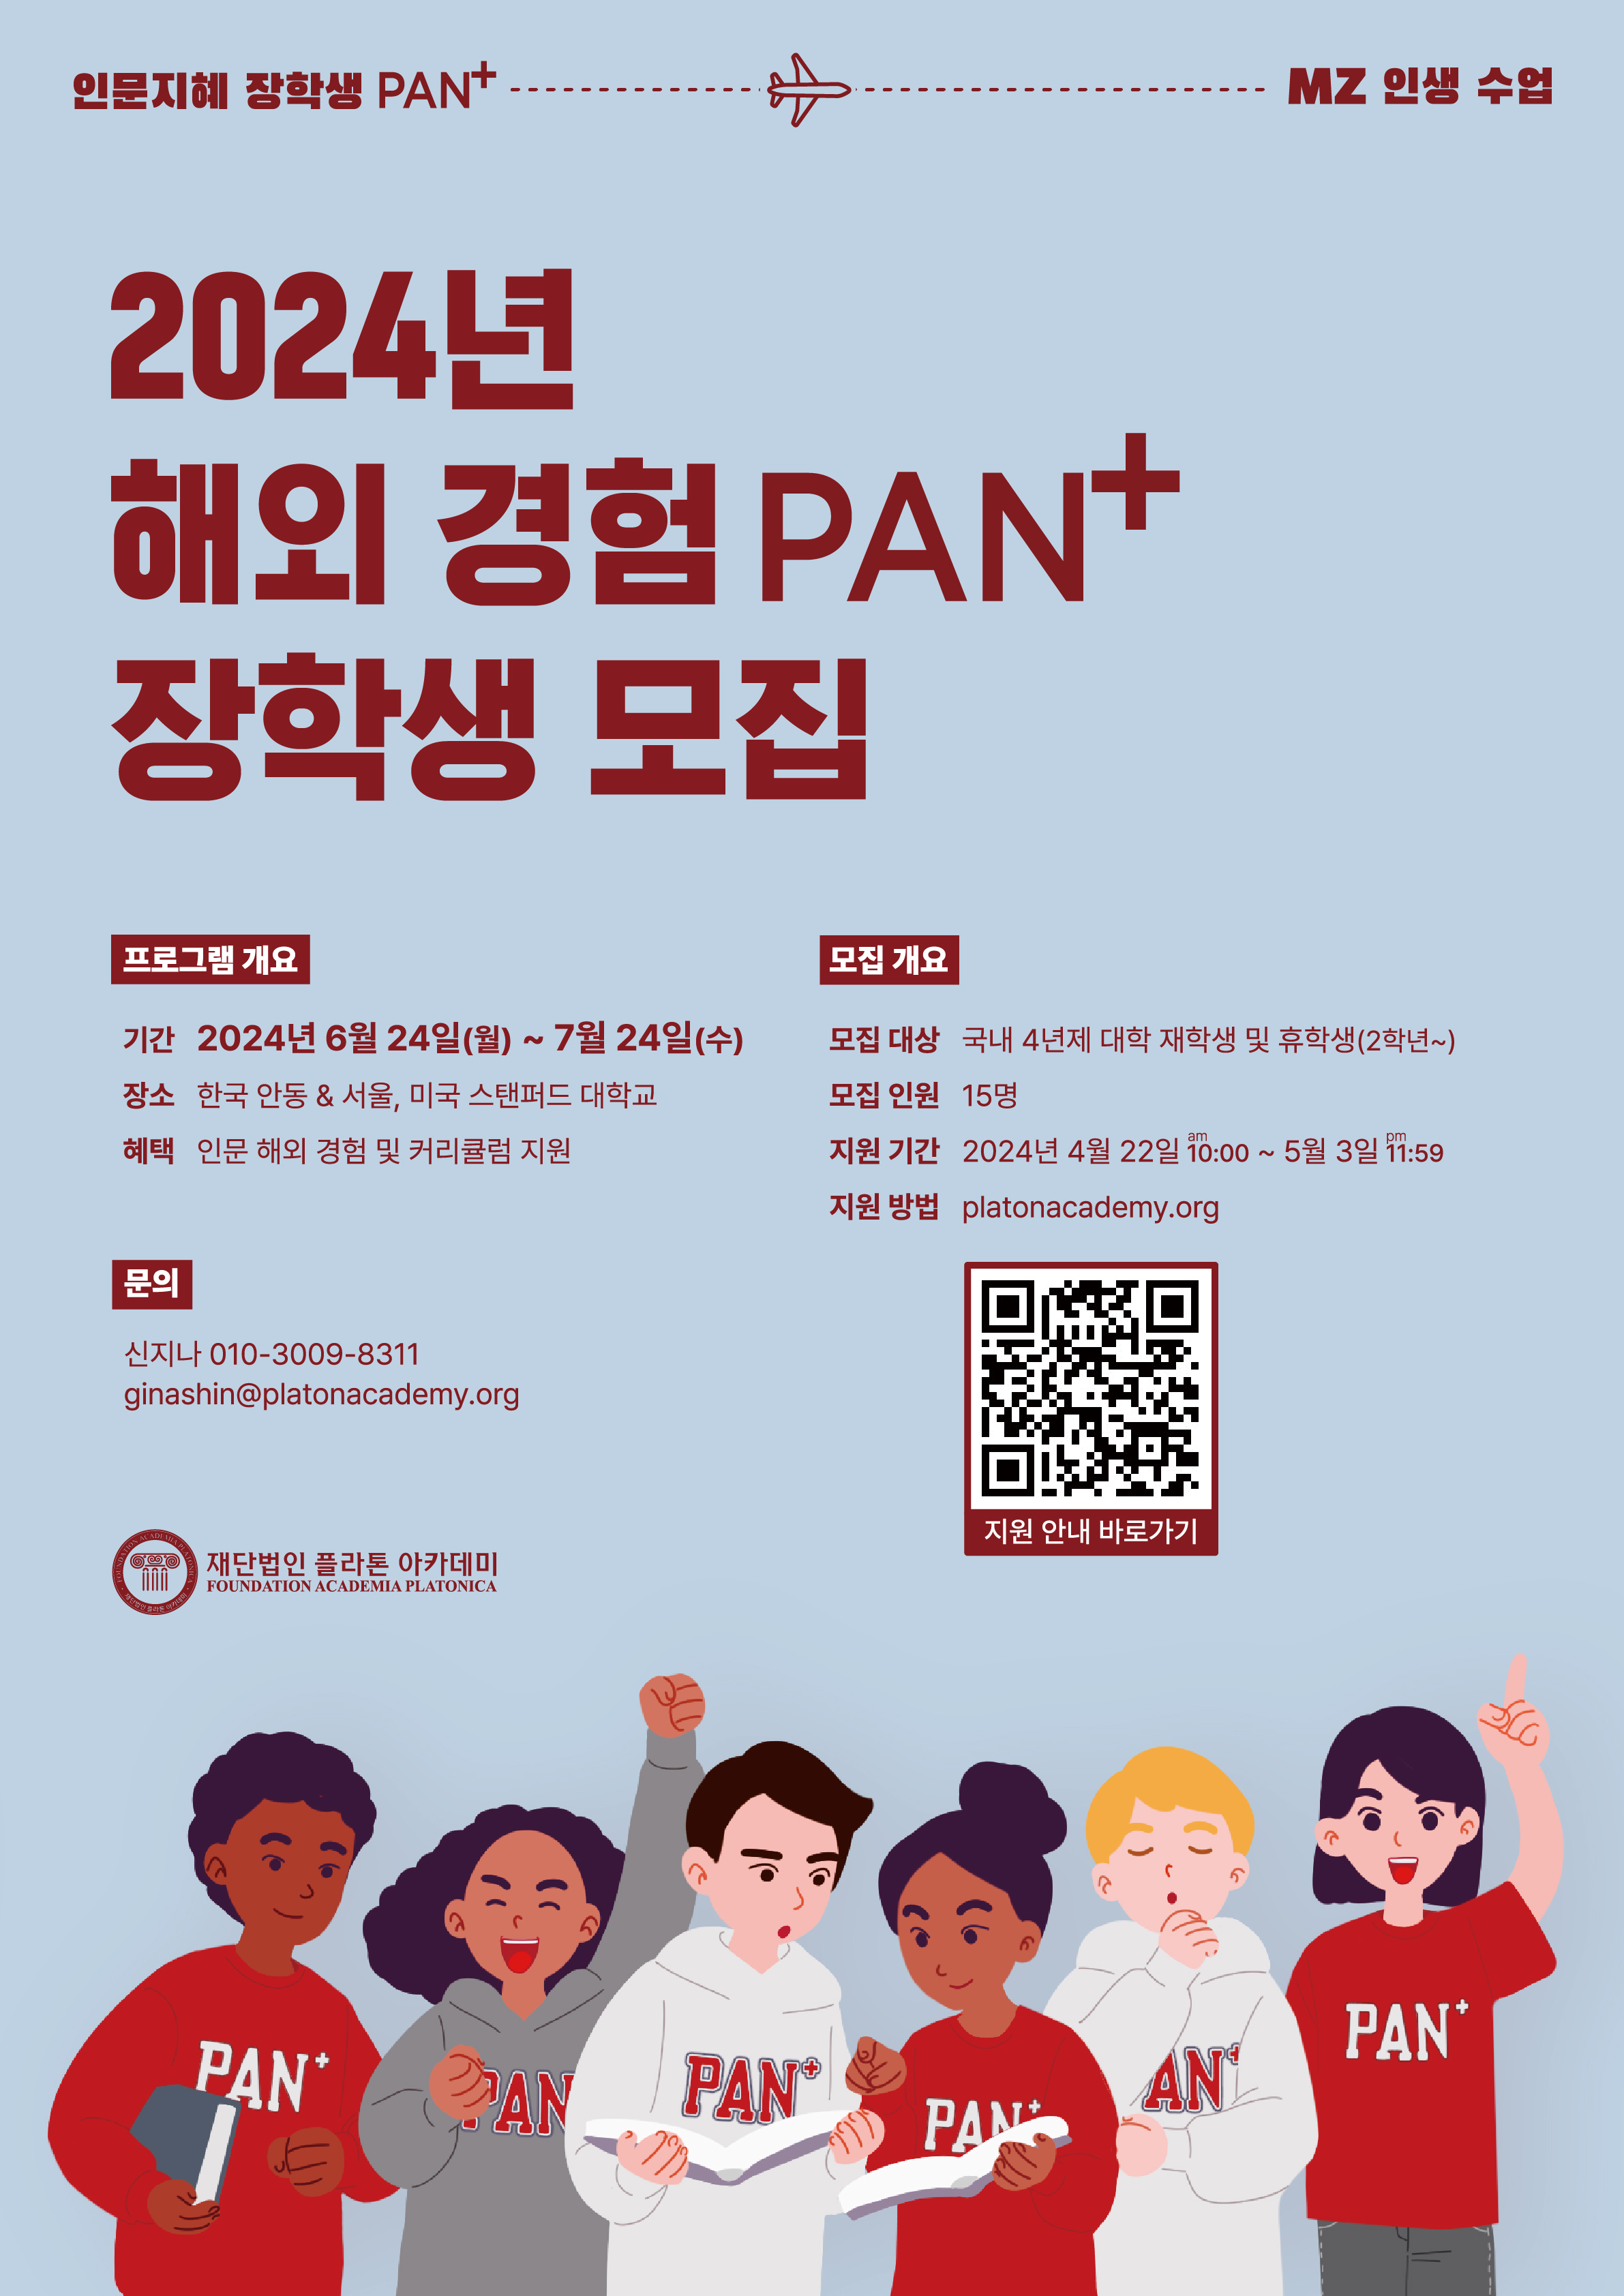 [홍보] 플라톤아카데미 해외 경험 PAN+ 장학생 모집(apply until 5.3.) 